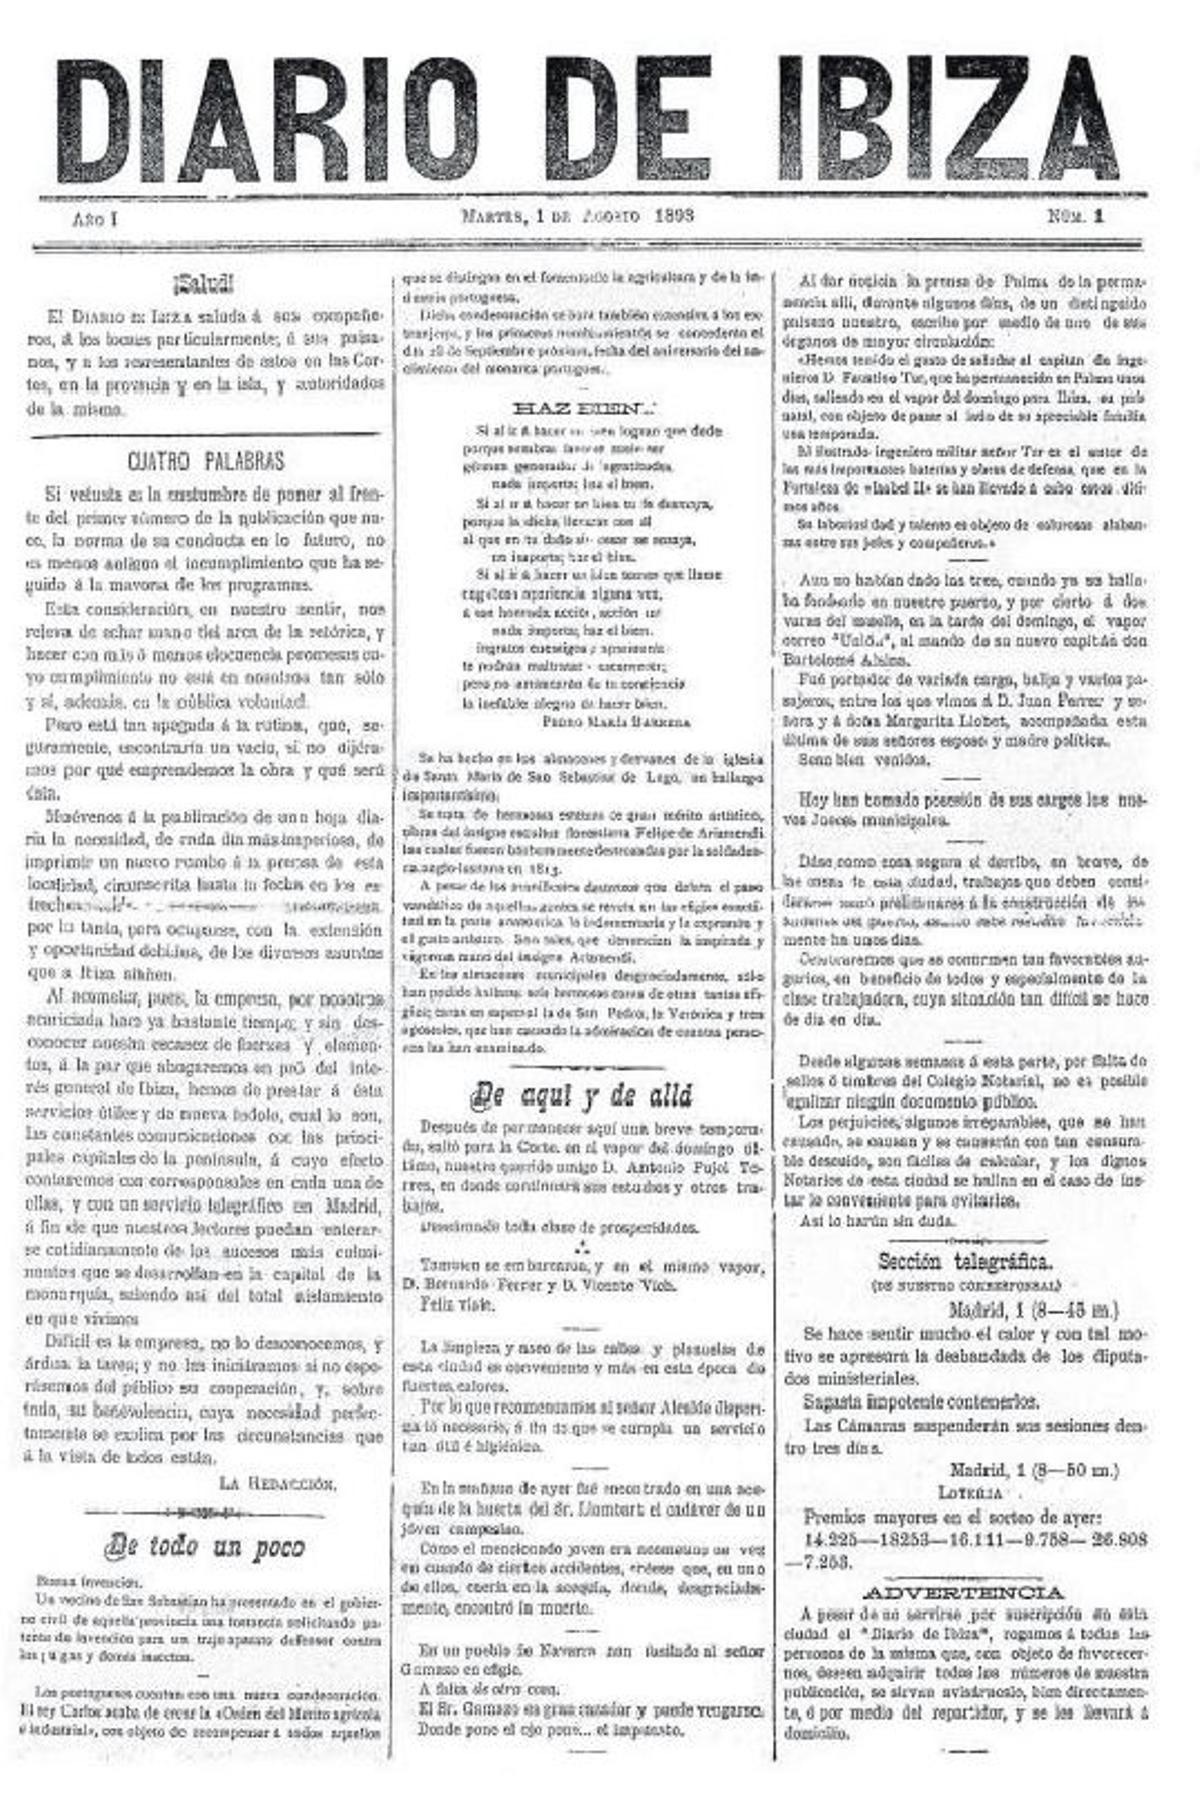 La portada del primer número de Diario de Ibiza, el 1 de agosto de 1893